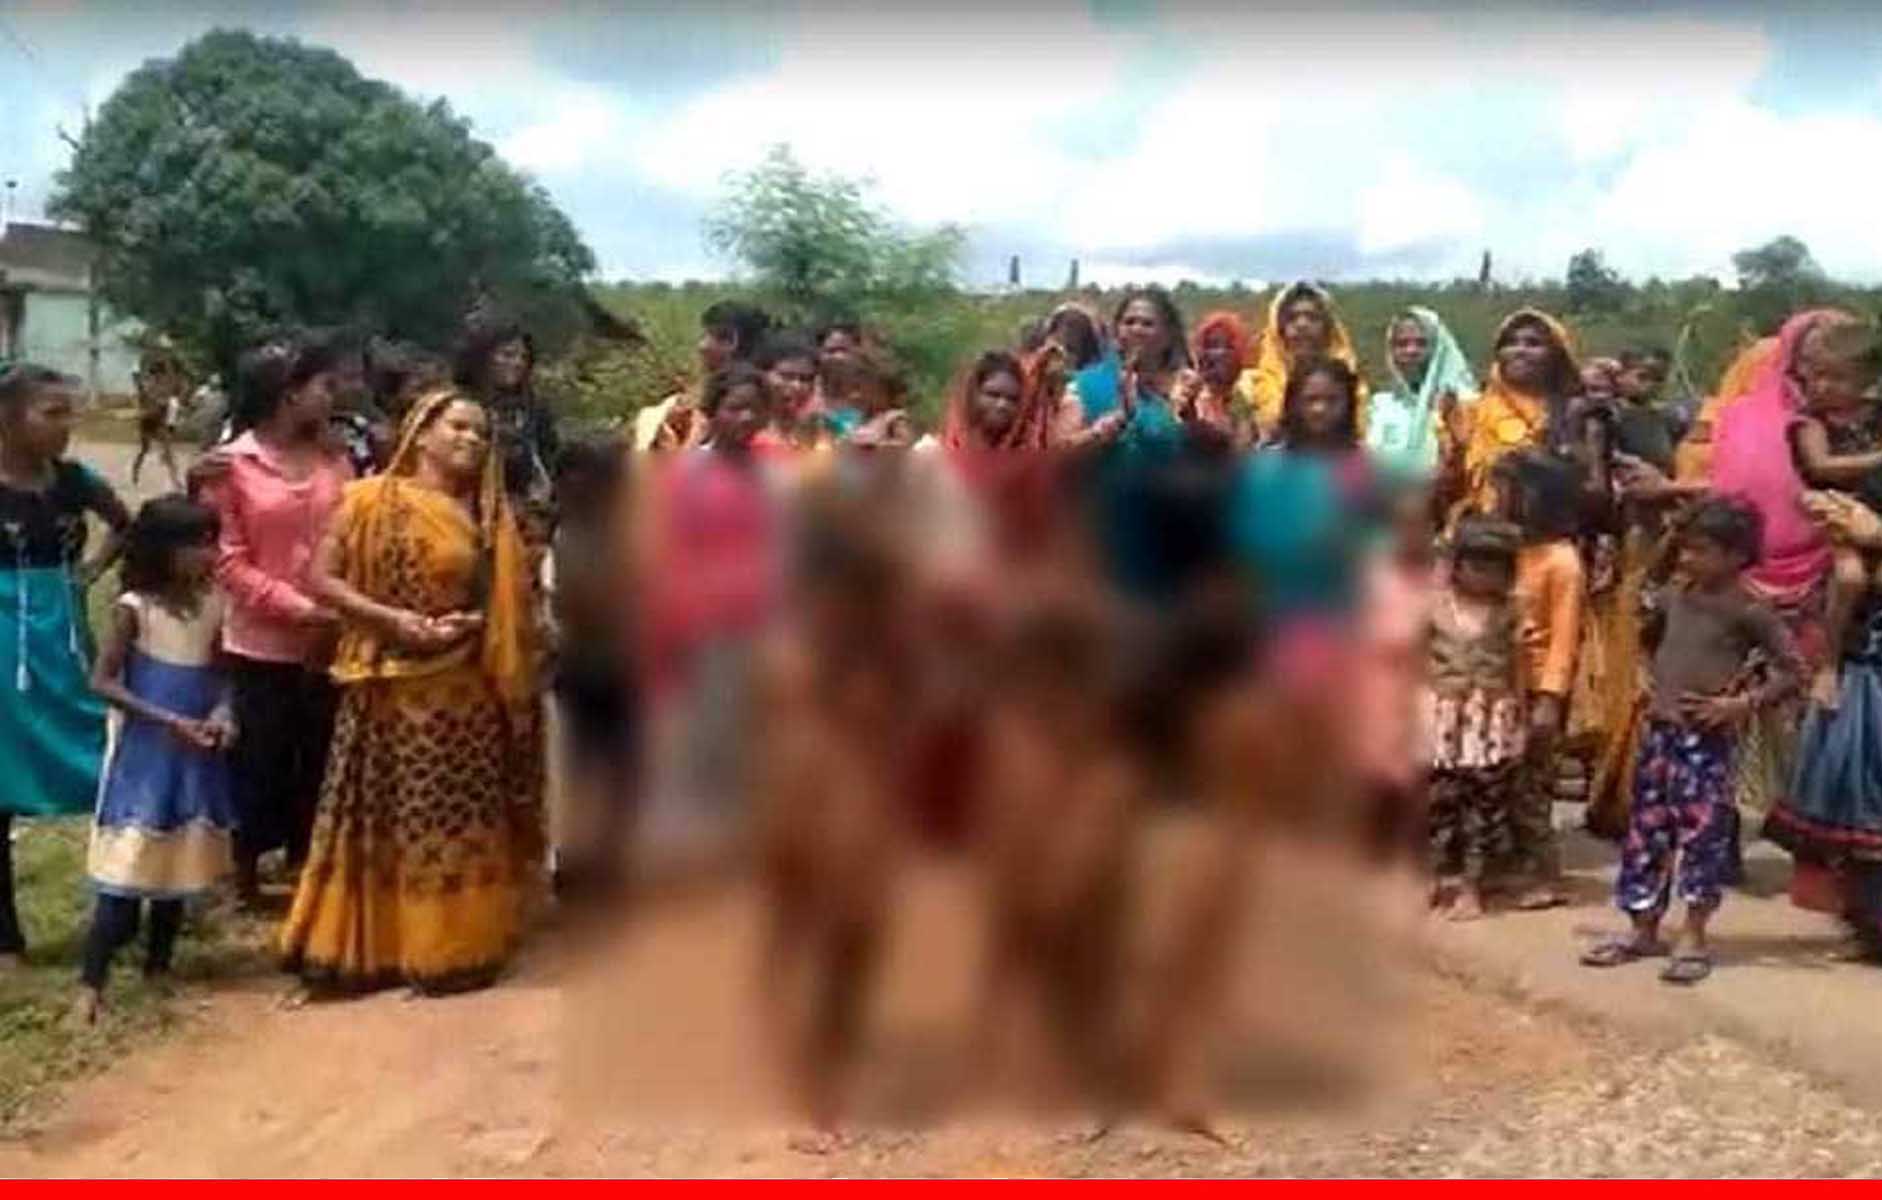 अंधविश्वास: अच्छी बारिश के लिए महिलाओं ने बच्चियों को निर्वस्त्र कर गांव में घुमाया